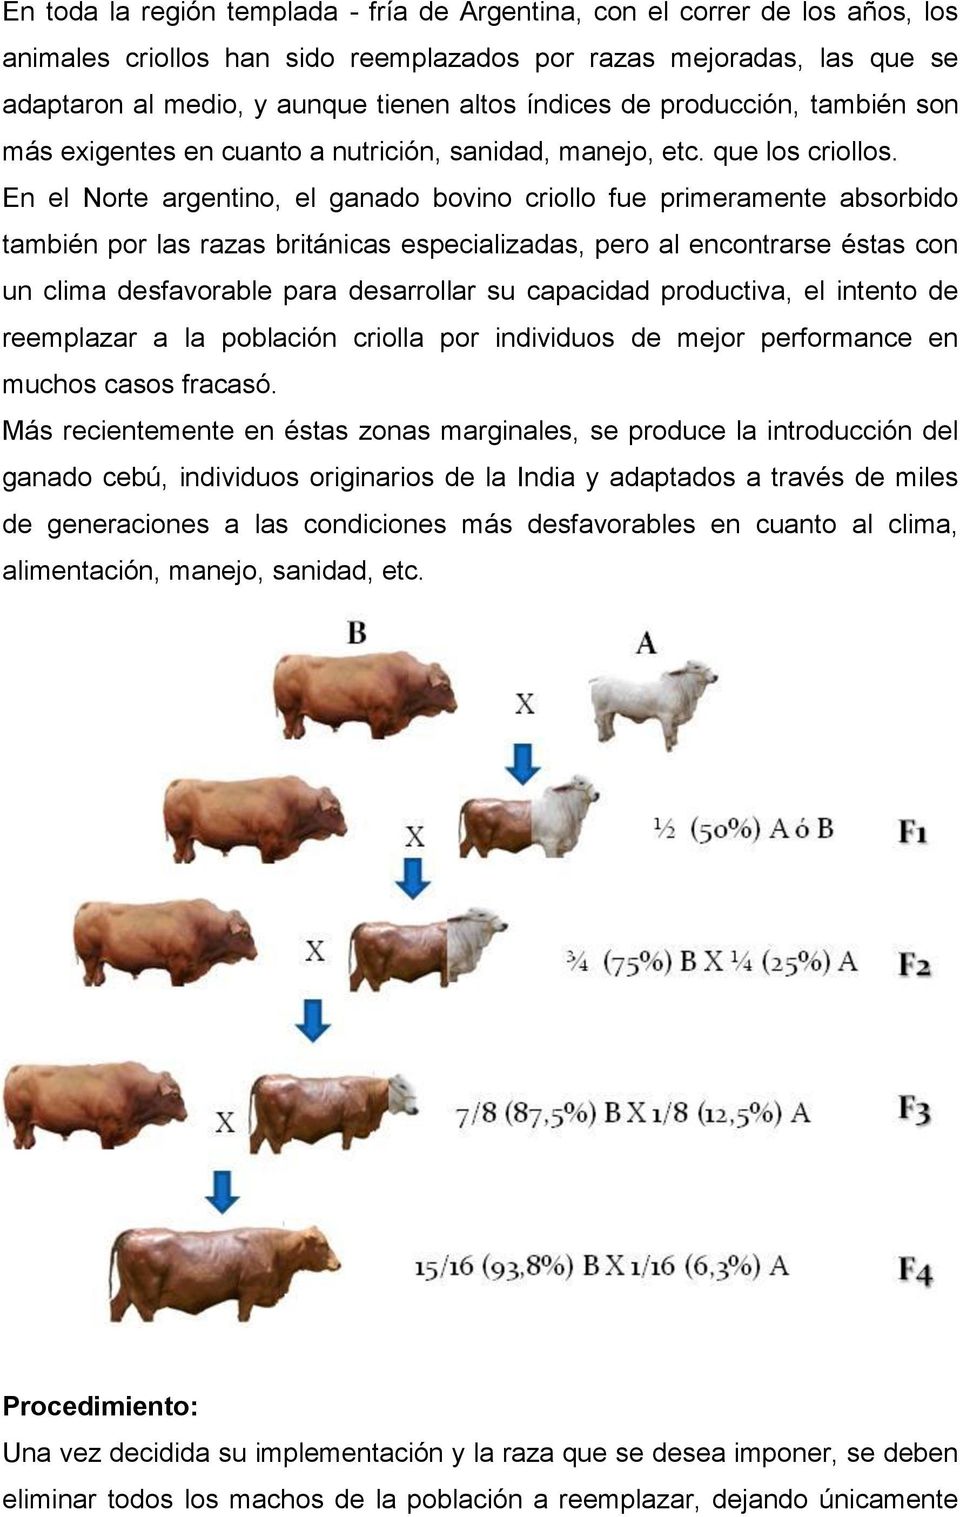 En el Norte argentino, el ganado bovino criollo fue primeramente absorbido también por las razas británicas especializadas, pero al encontrarse éstas con un clima desfavorable para desarrollar su